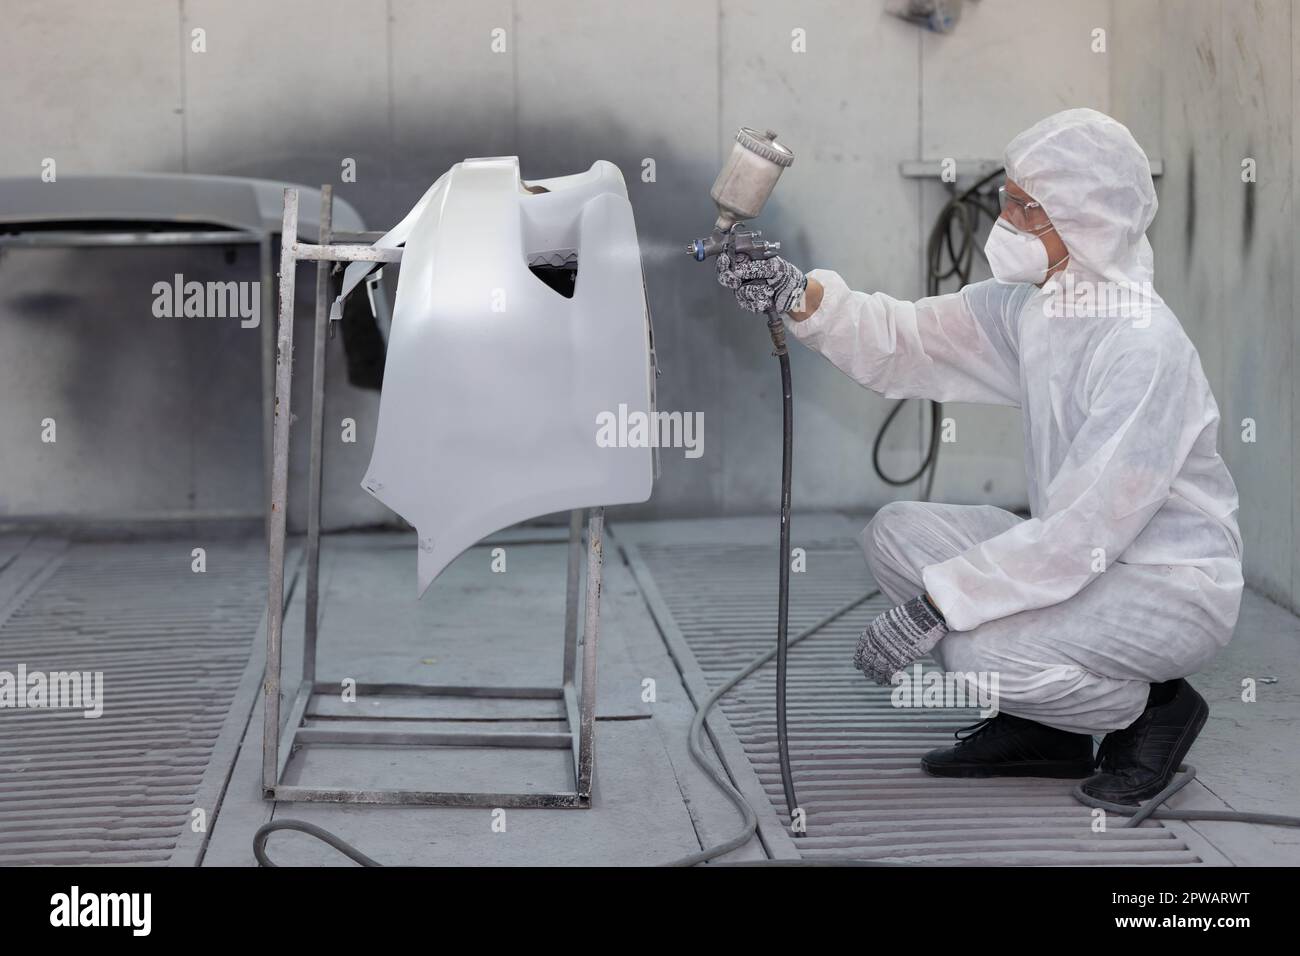 Garagenfarbe Reparaturlackierung Wachs Airbrush Beschichtung Team Mitarbeiter in der Autowerkstatt Stockfoto